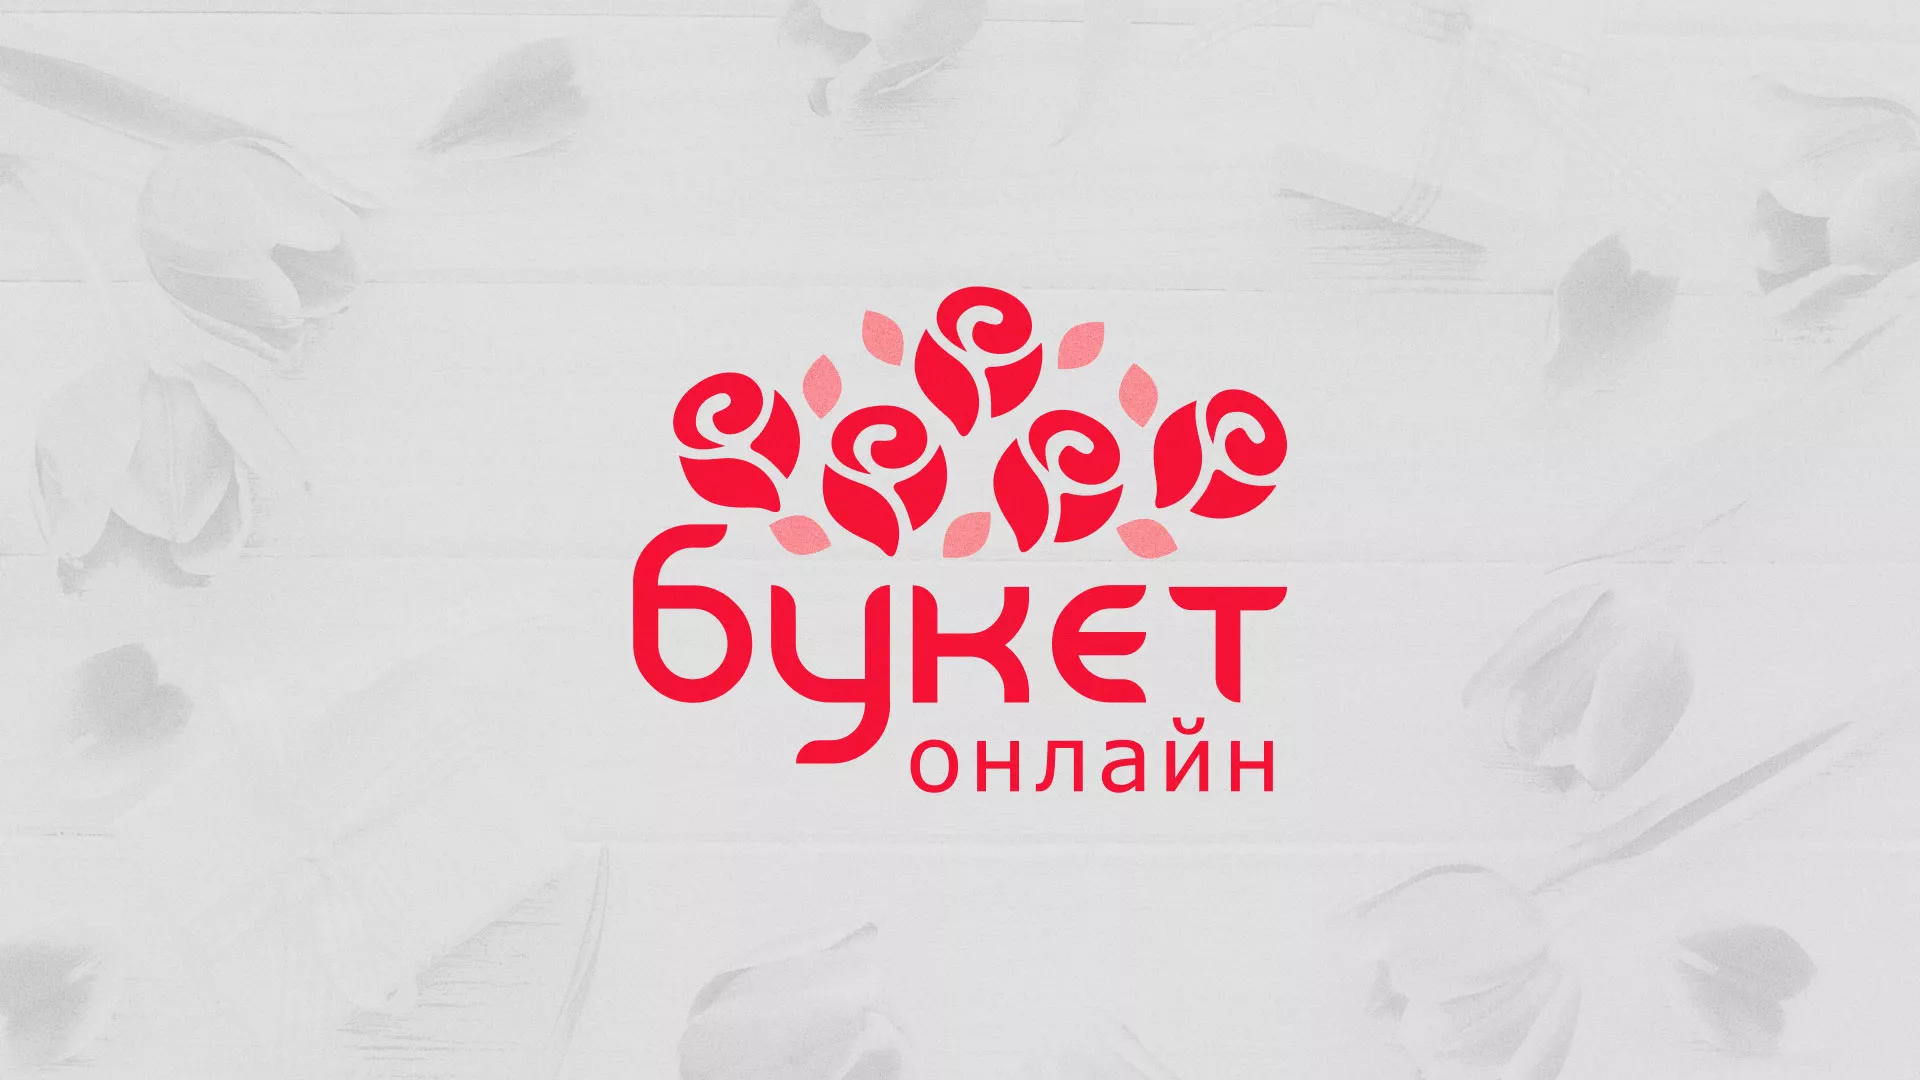 Создание интернет-магазина «Букет-онлайн» по цветам в Хабаровске